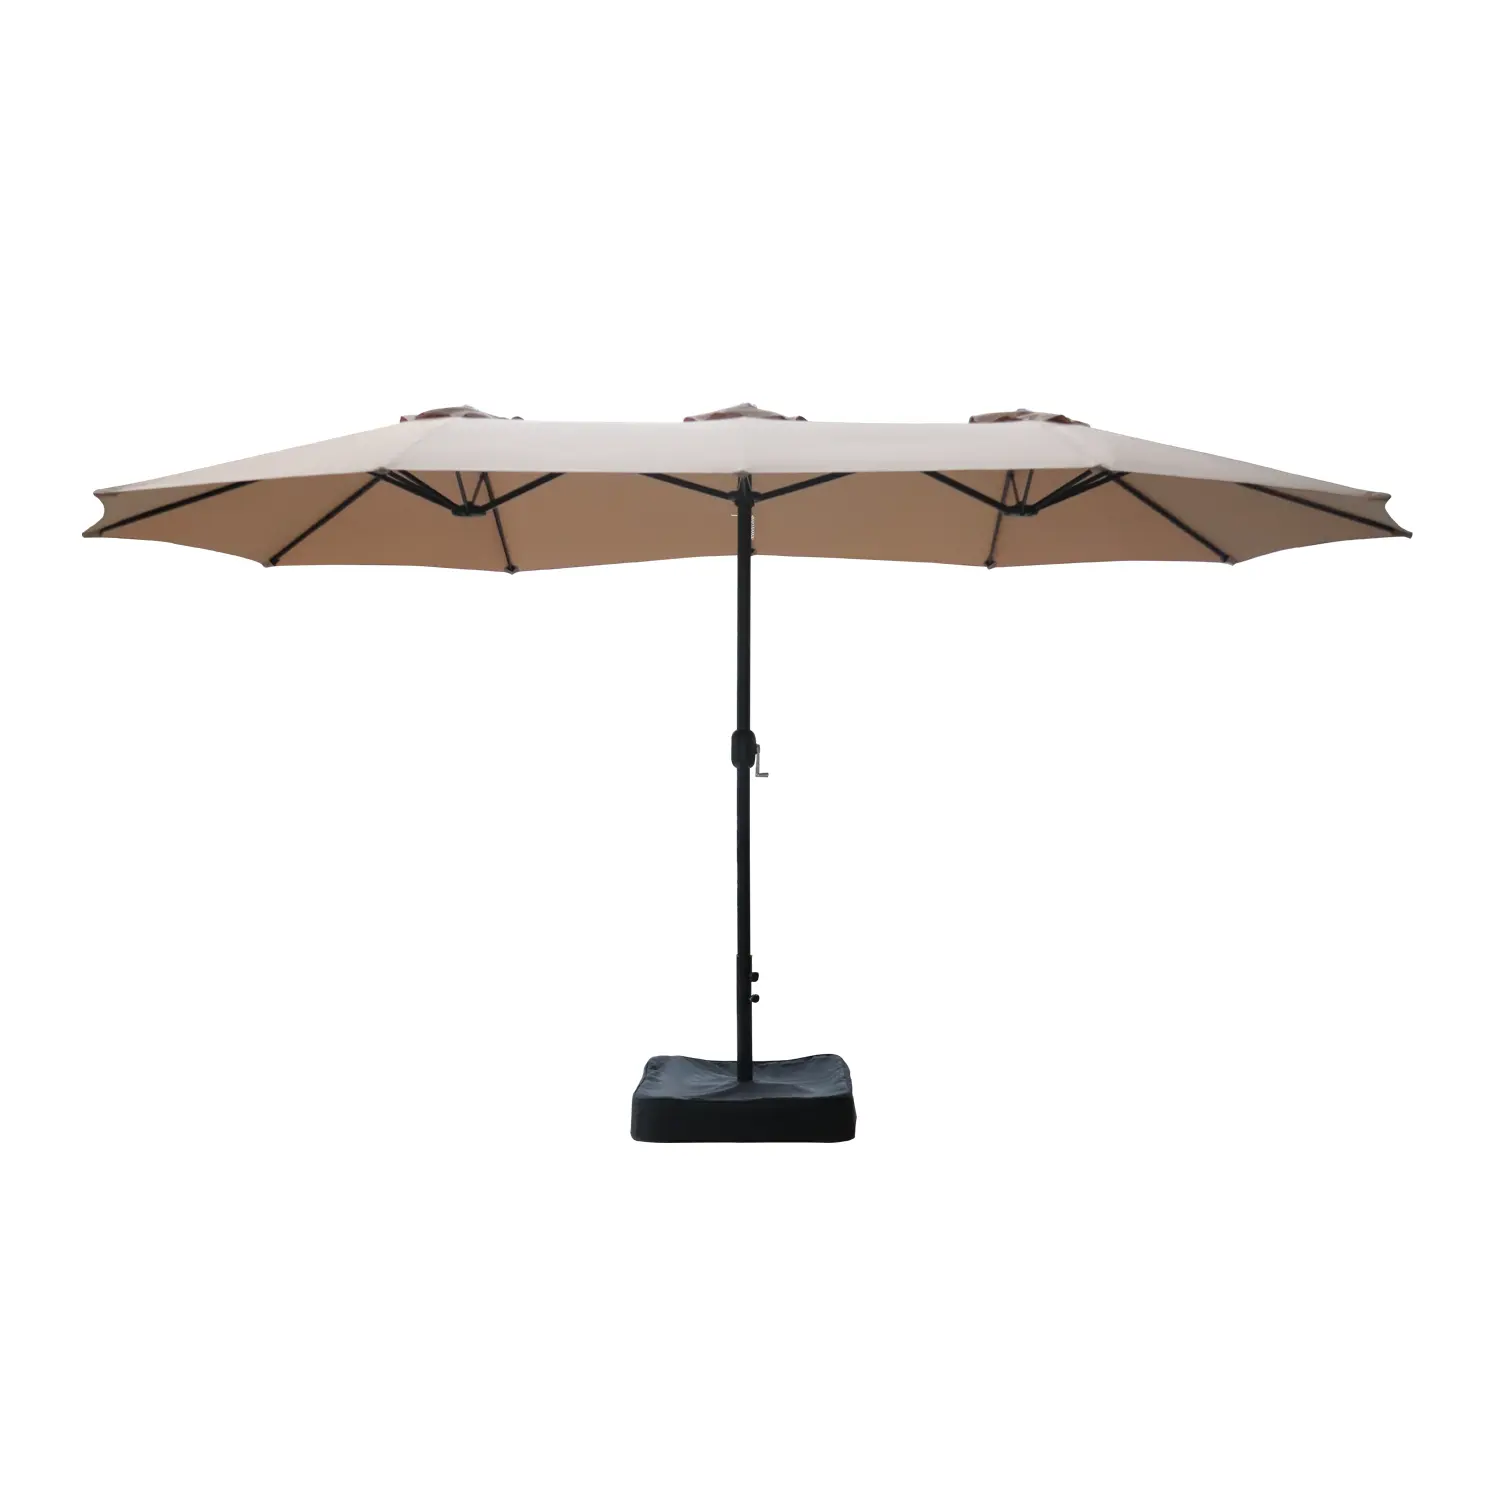 Guarda-chuva com mercado duplo, guarda-chuva com manivela e saco de areia de plástico